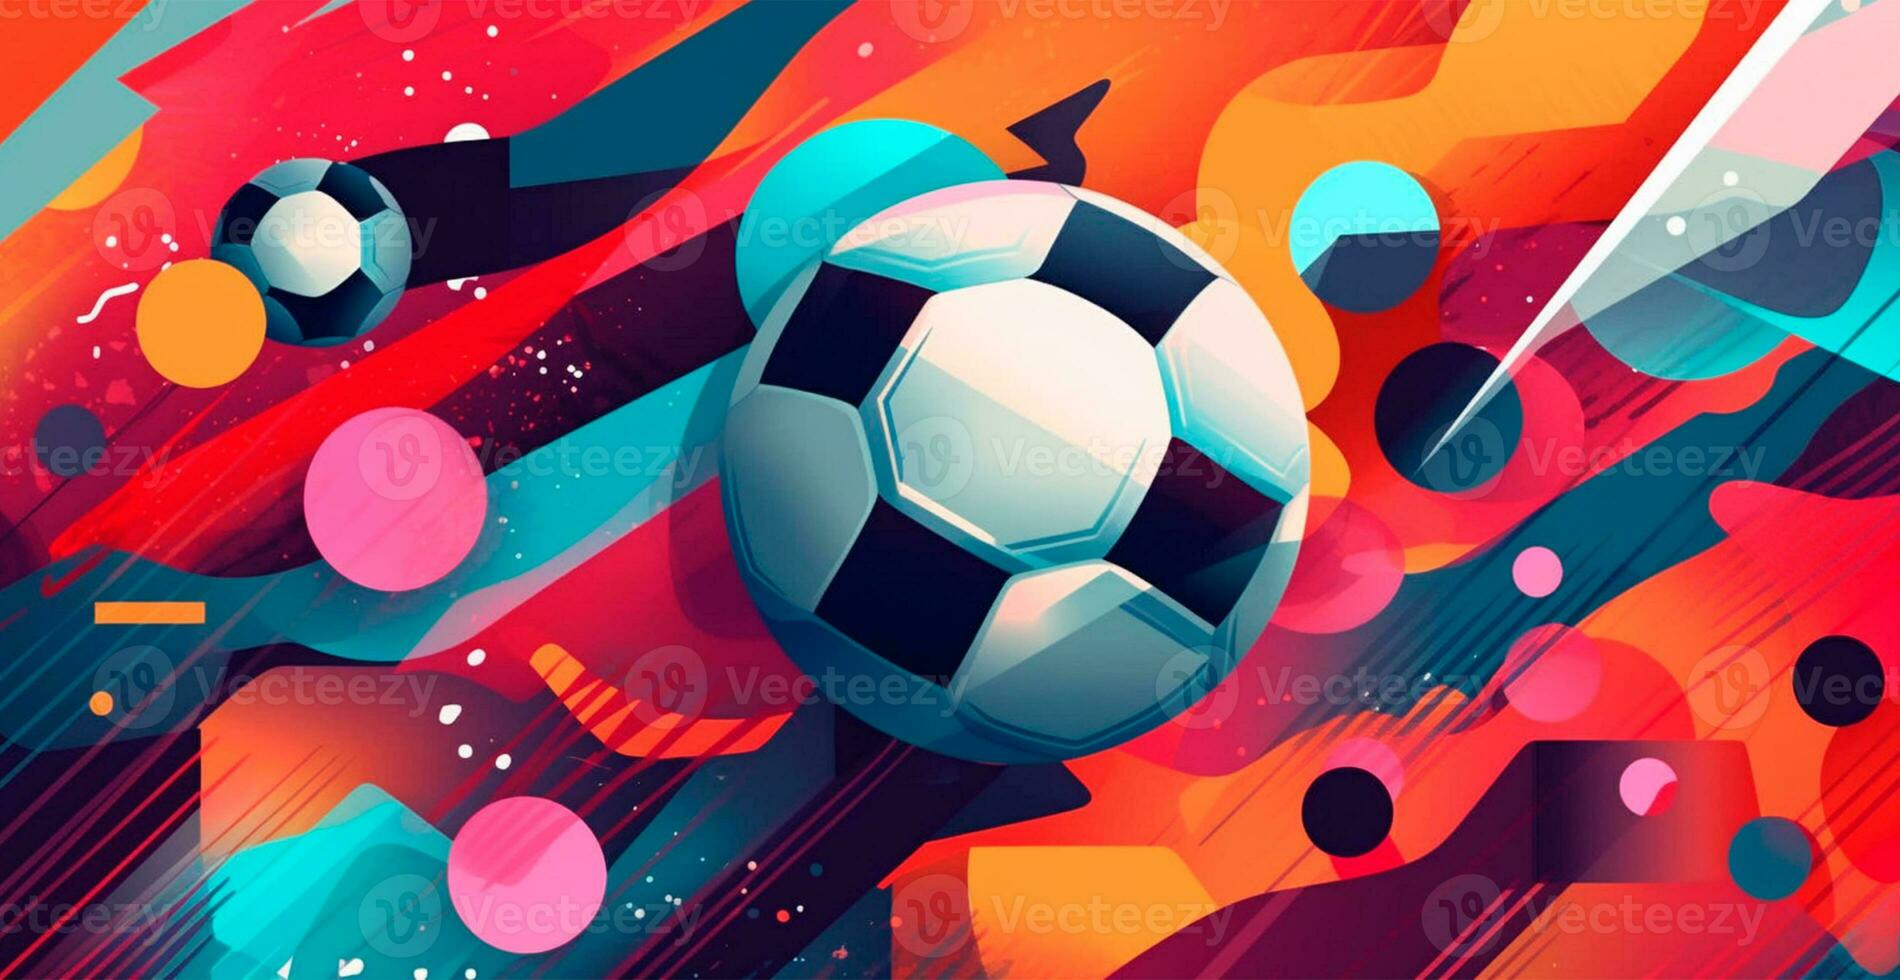 abstrakt fotboll bakgrund, sporter fotboll boll - ai genererad bild foto